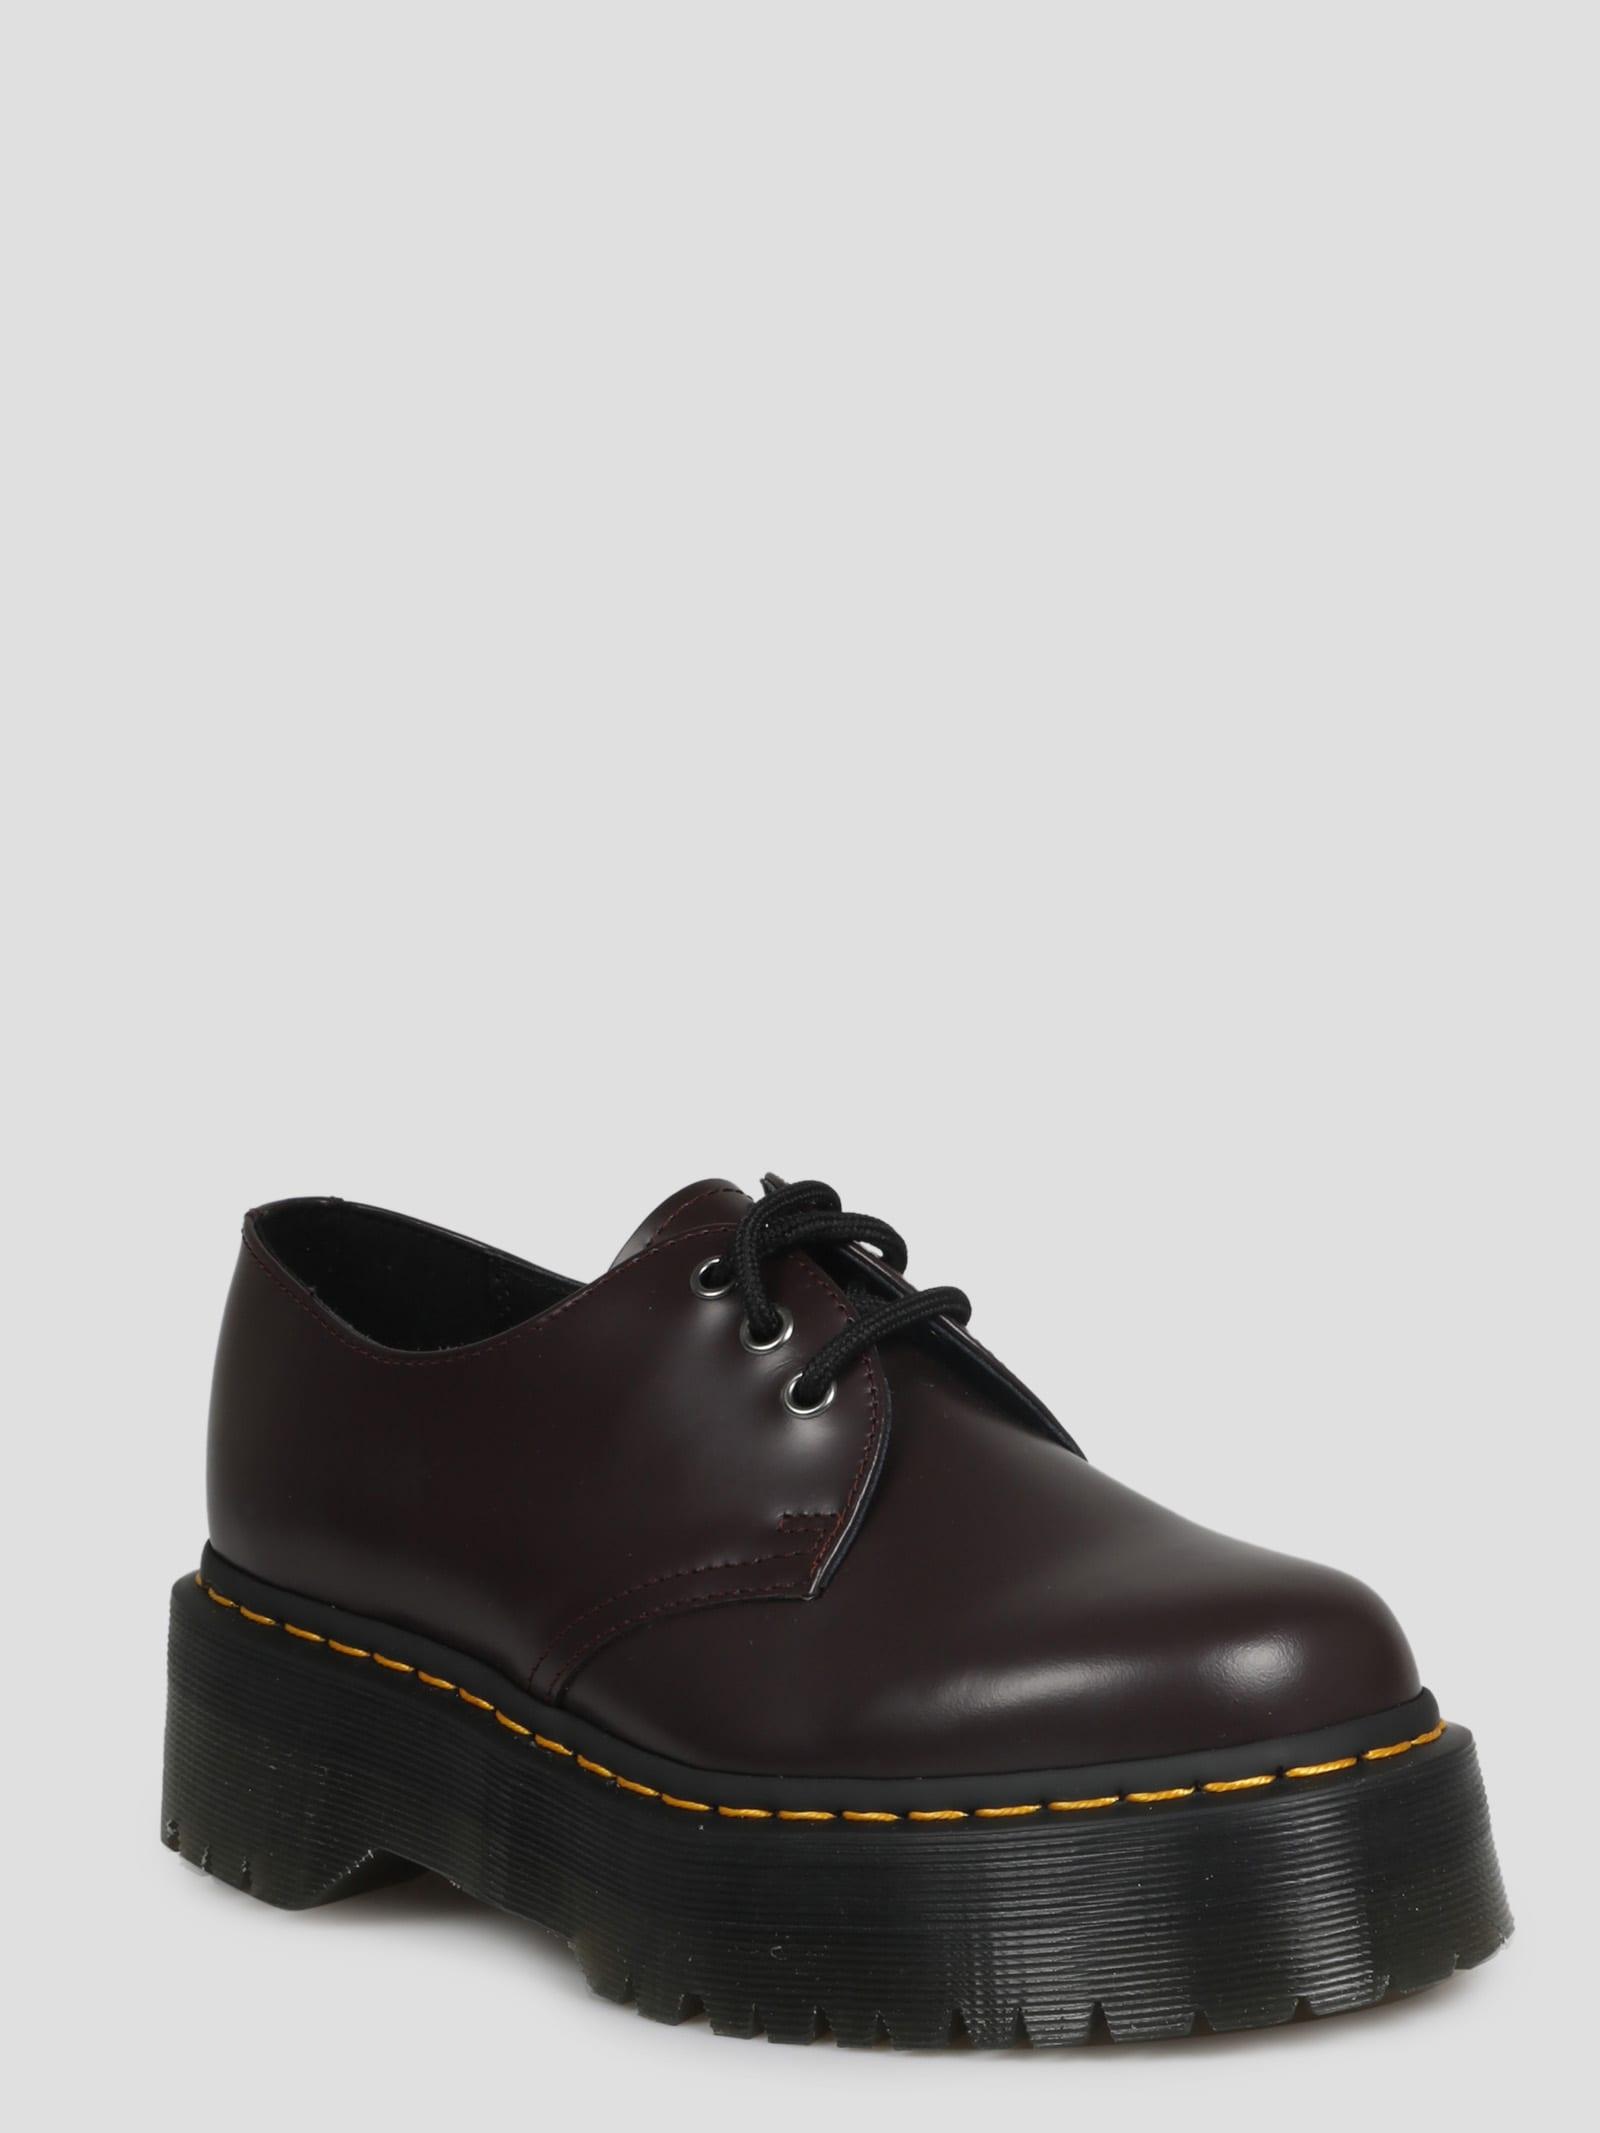 Black 1461 Platform Oxfords SSENSE Women Shoes Flat Shoes Formal Shoes 